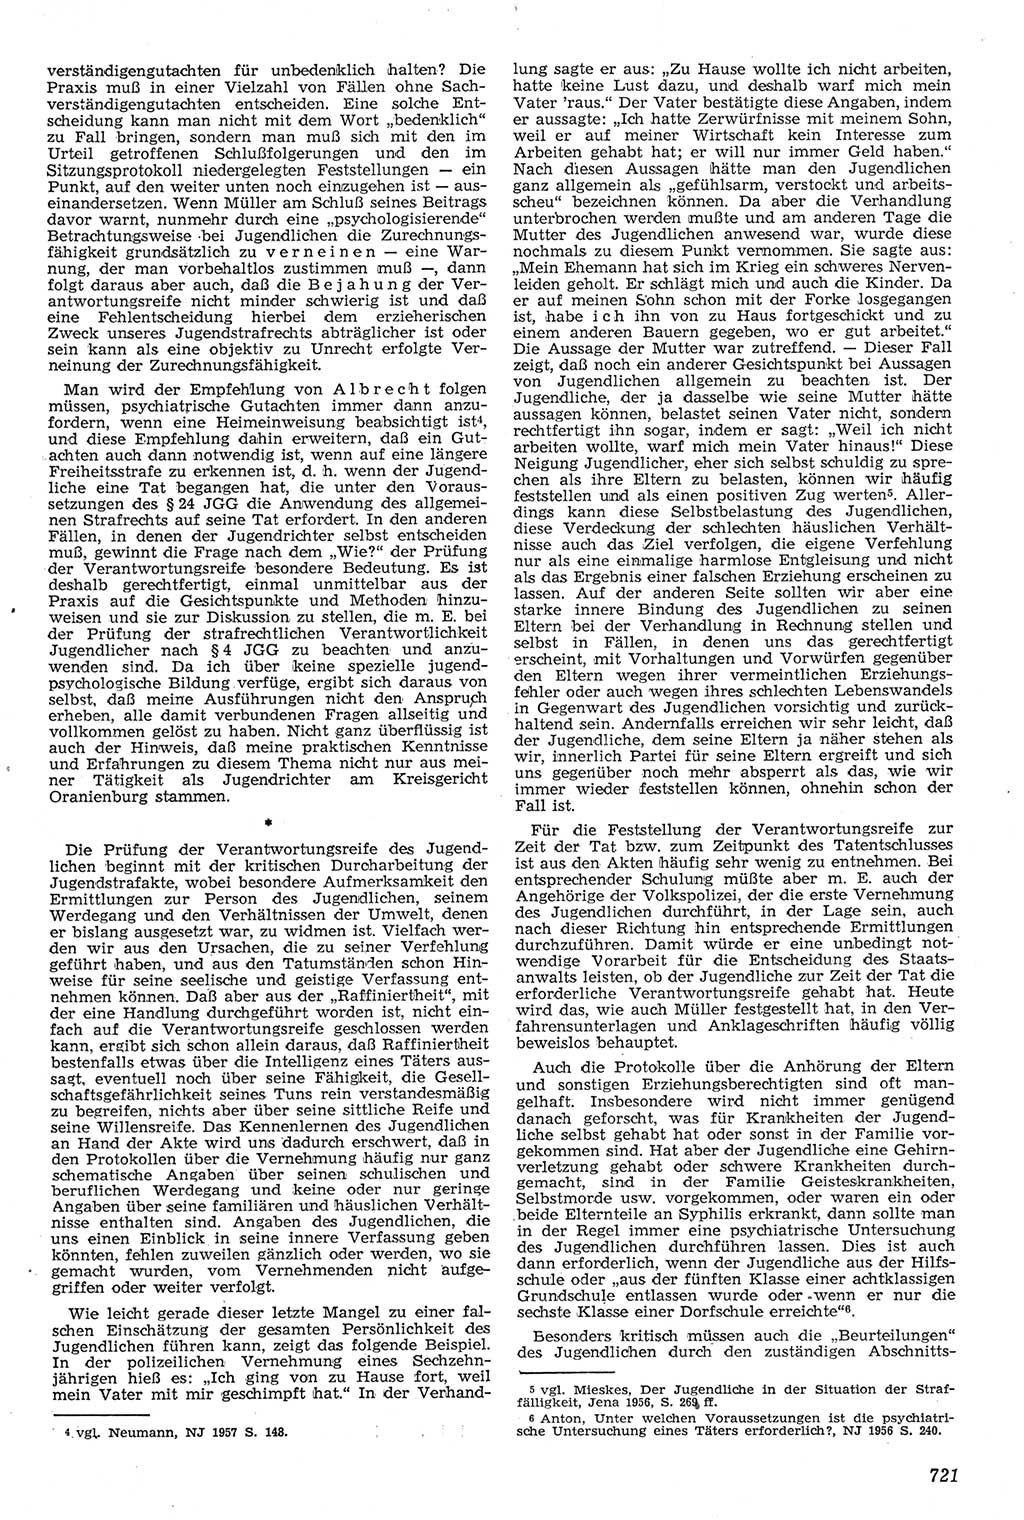 Neue Justiz (NJ), Zeitschrift für Recht und Rechtswissenschaft [Deutsche Demokratische Republik (DDR)], 11. Jahrgang 1957, Seite 721 (NJ DDR 1957, S. 721)